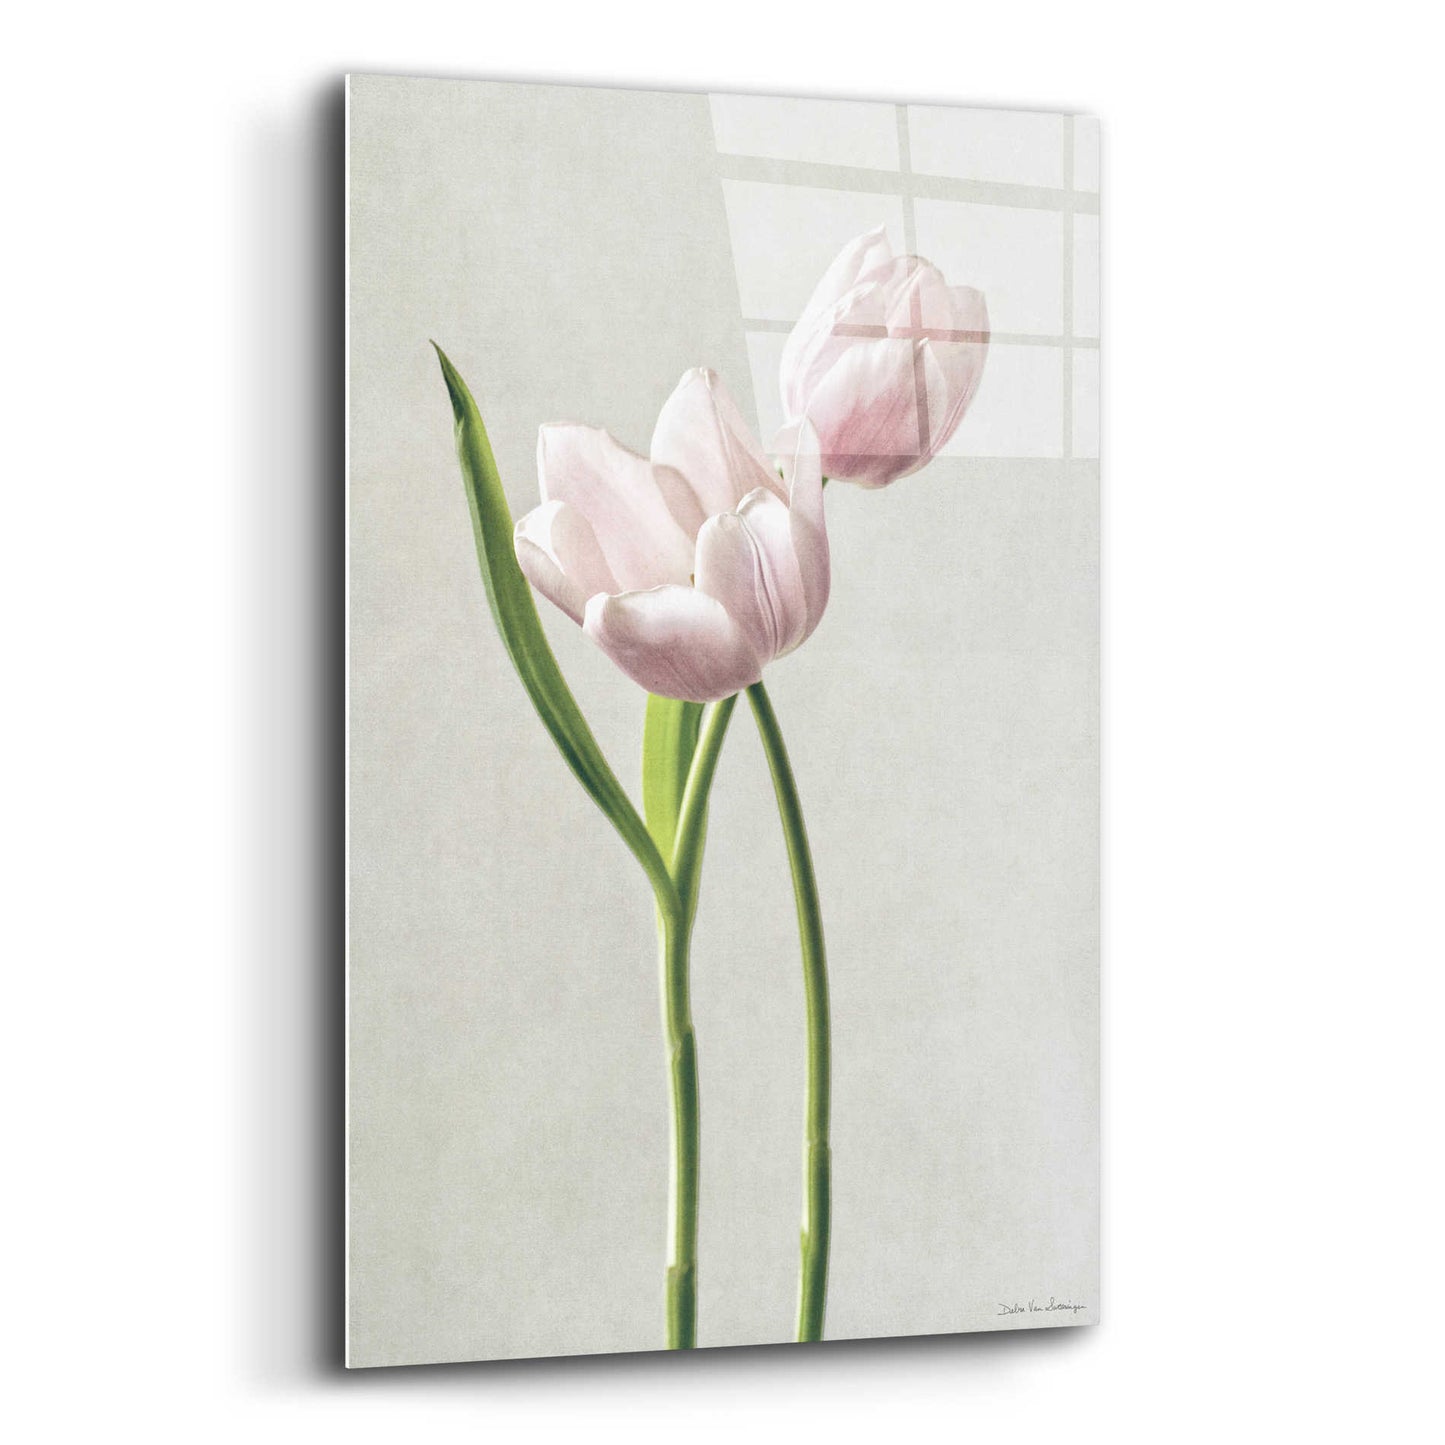 Epic Art 'Light Tulips III' by Debra Van Swearingen, Acrylic Glass Wall Art,12x16